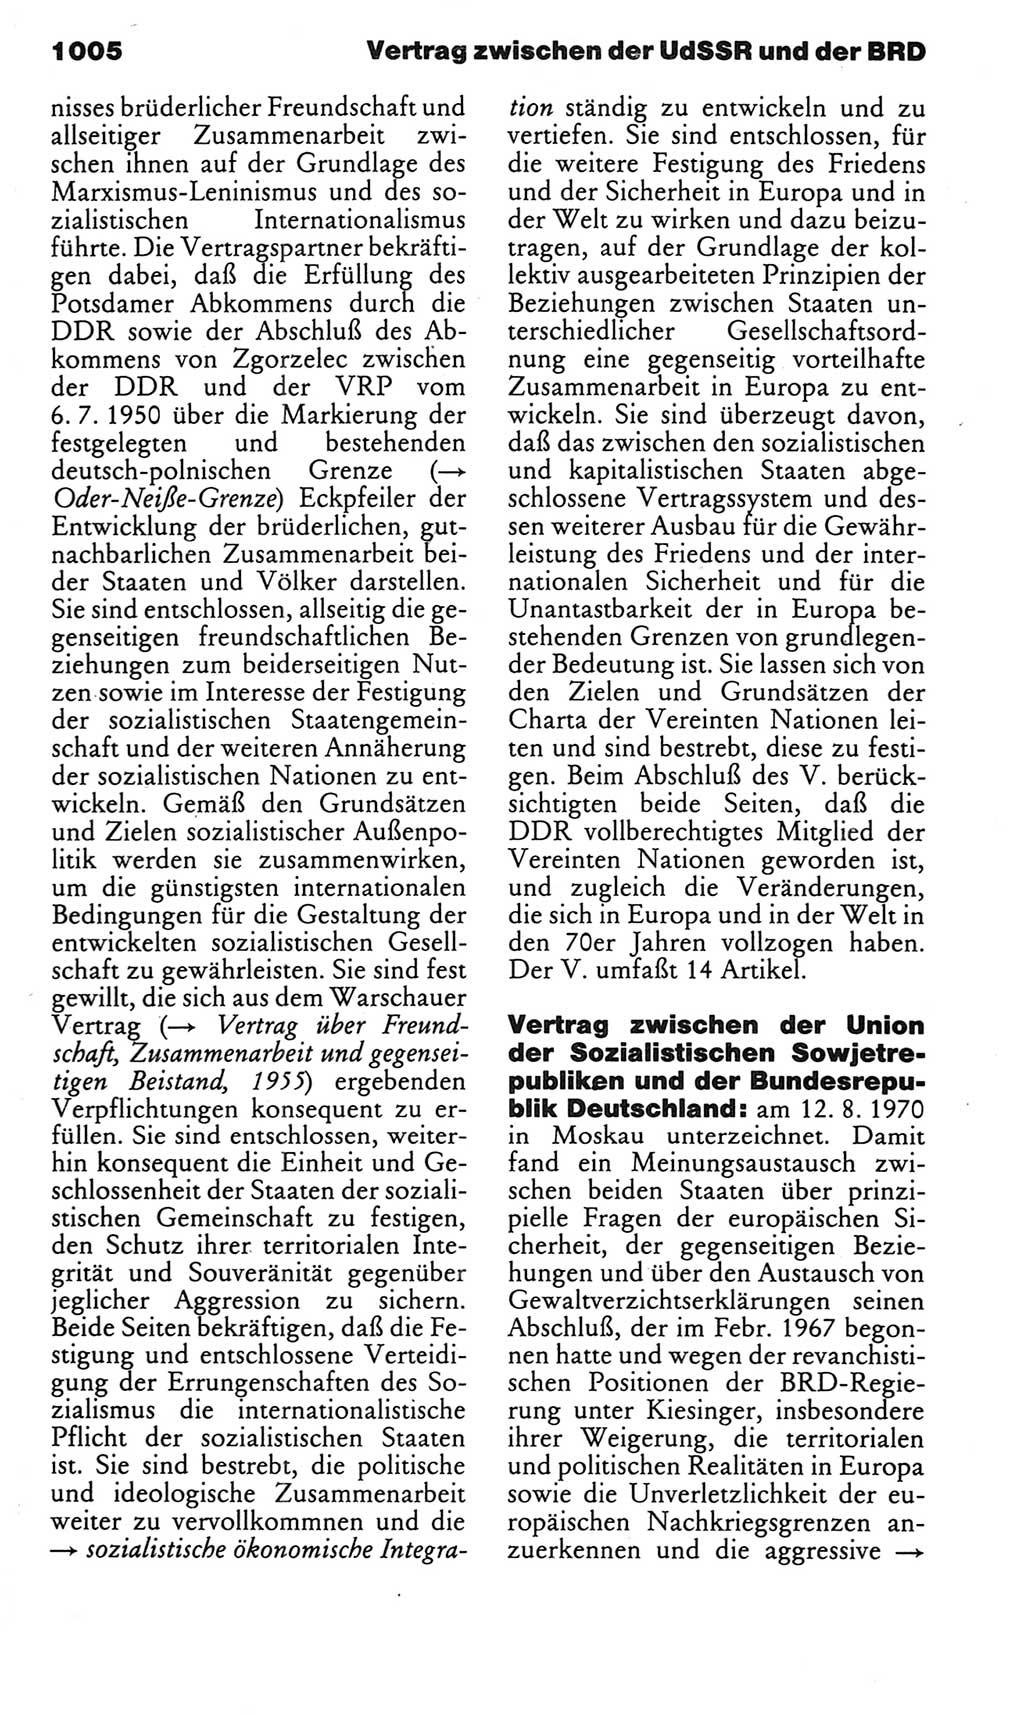 Kleines politisches Wörterbuch [Deutsche Demokratische Republik (DDR)] 1983, Seite 1005 (Kl. pol. Wb. DDR 1983, S. 1005)